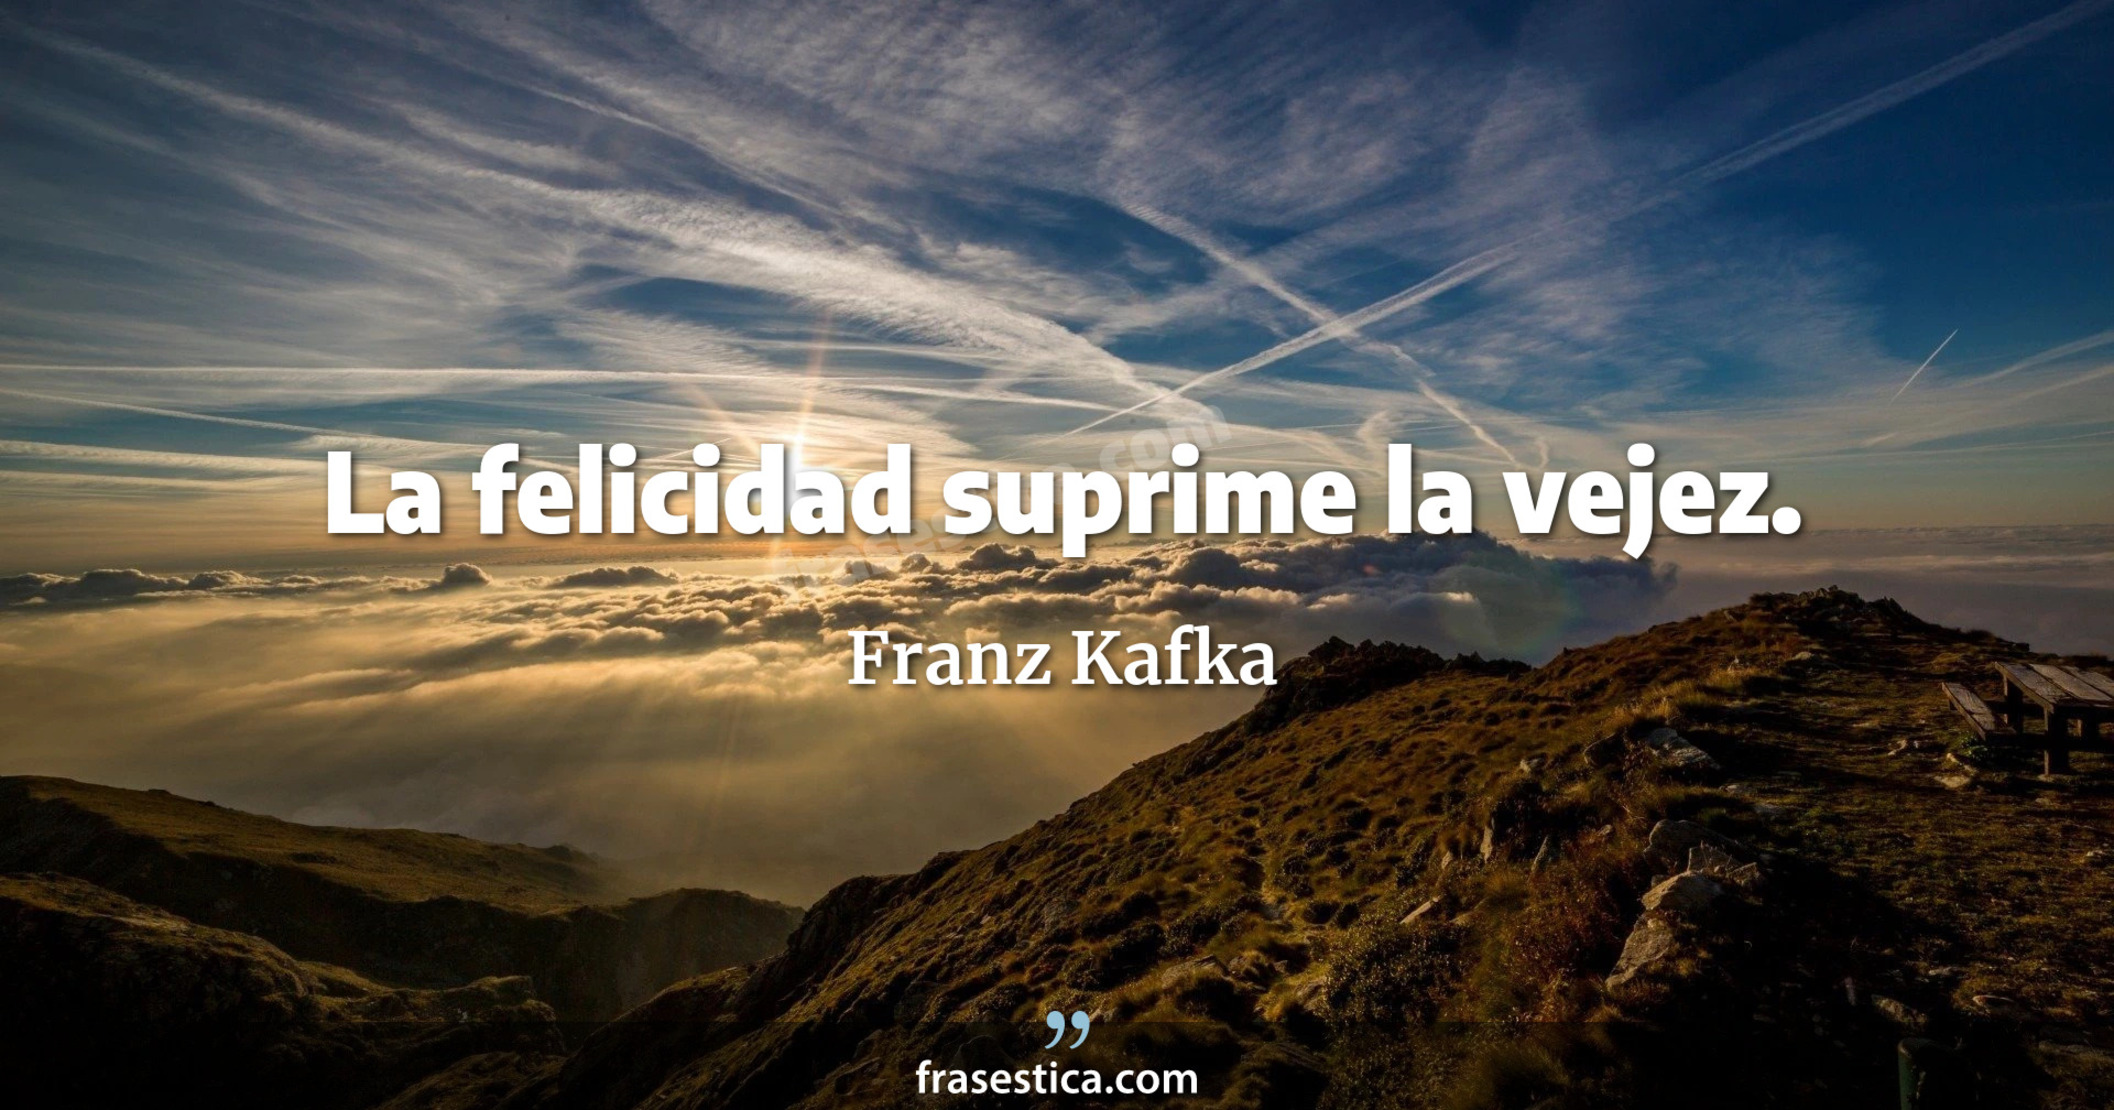 La felicidad suprime la vejez. - Franz Kafka